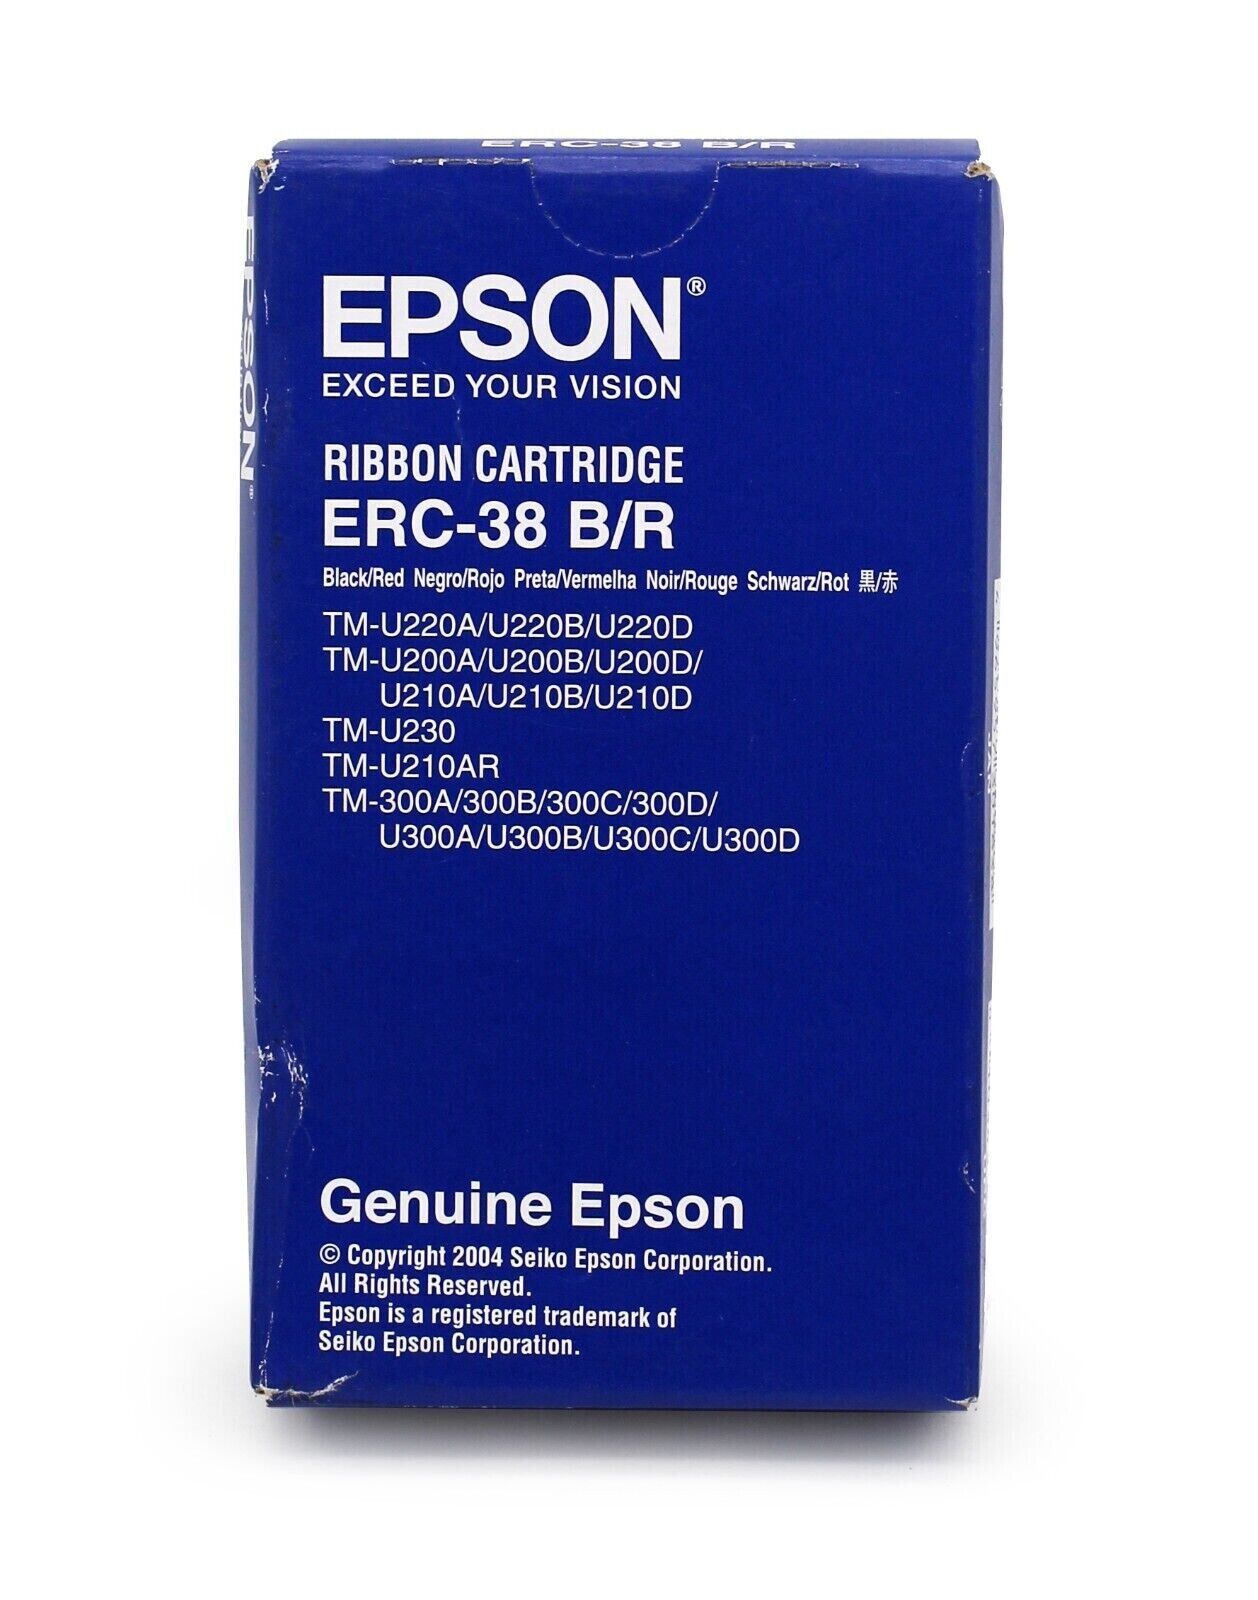 Genuine Epson ERC-38 B/R Black/Red Print Ribbon for Epson TM-U230/TM-U220 Series